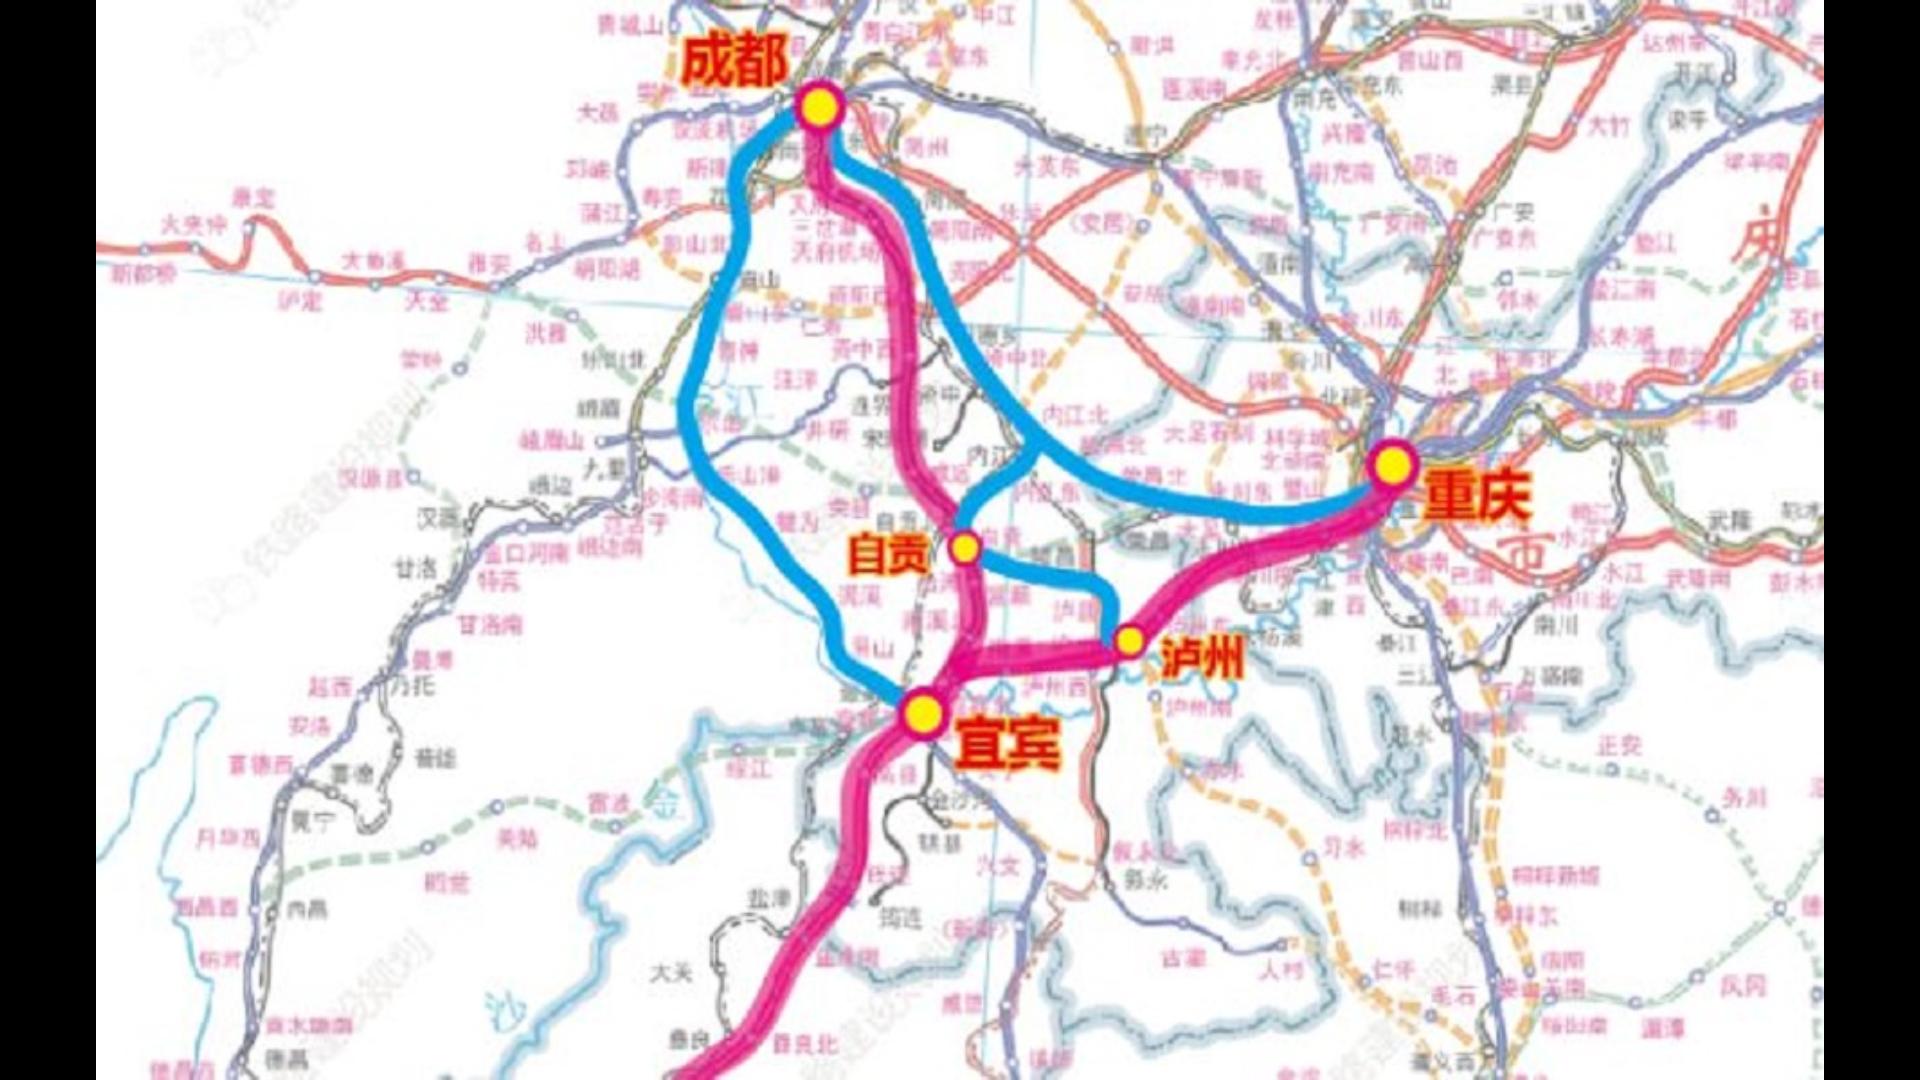 成宜高速铁路,四川省内首条设计速度350千米/小时的高速铁路